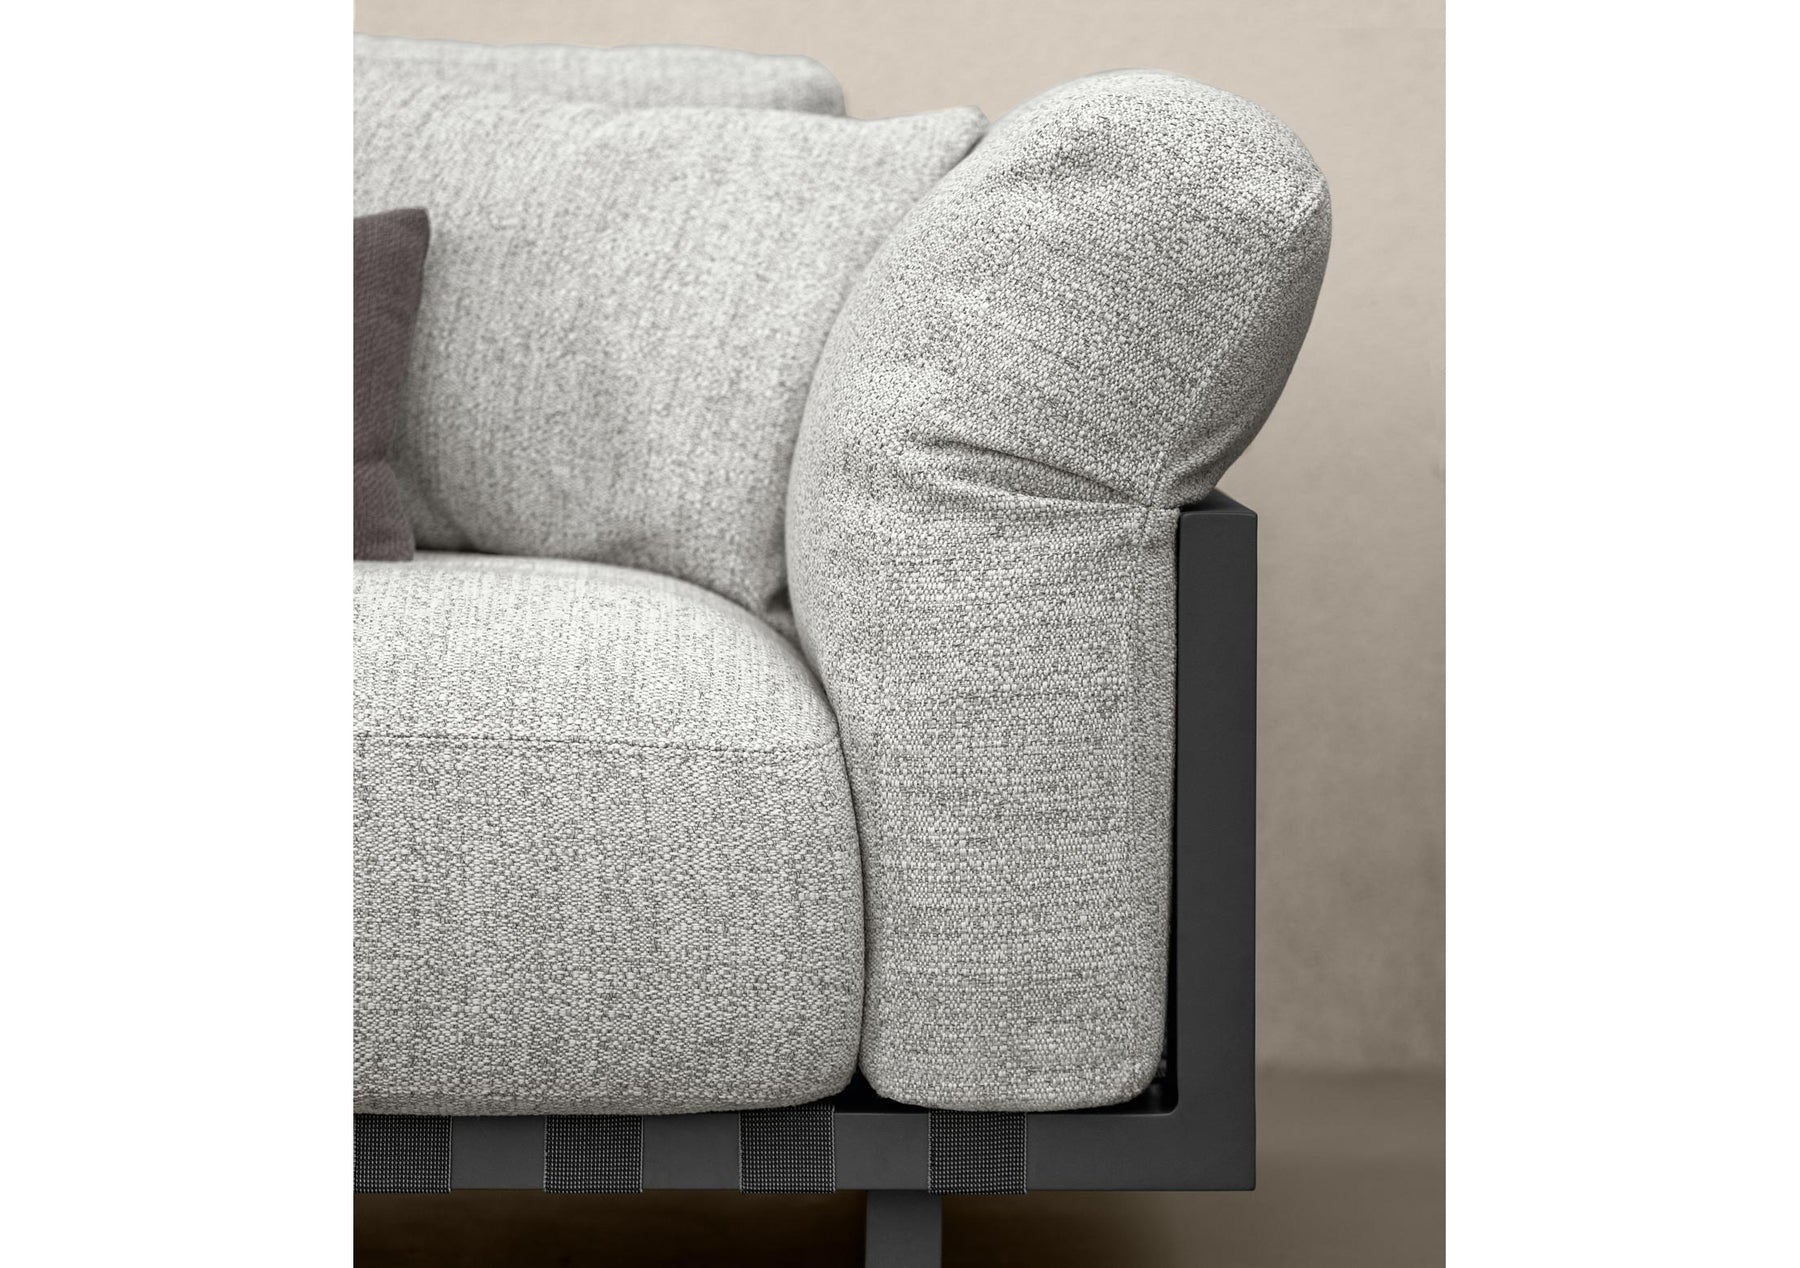 Argo//Alu Three Seater Sofa